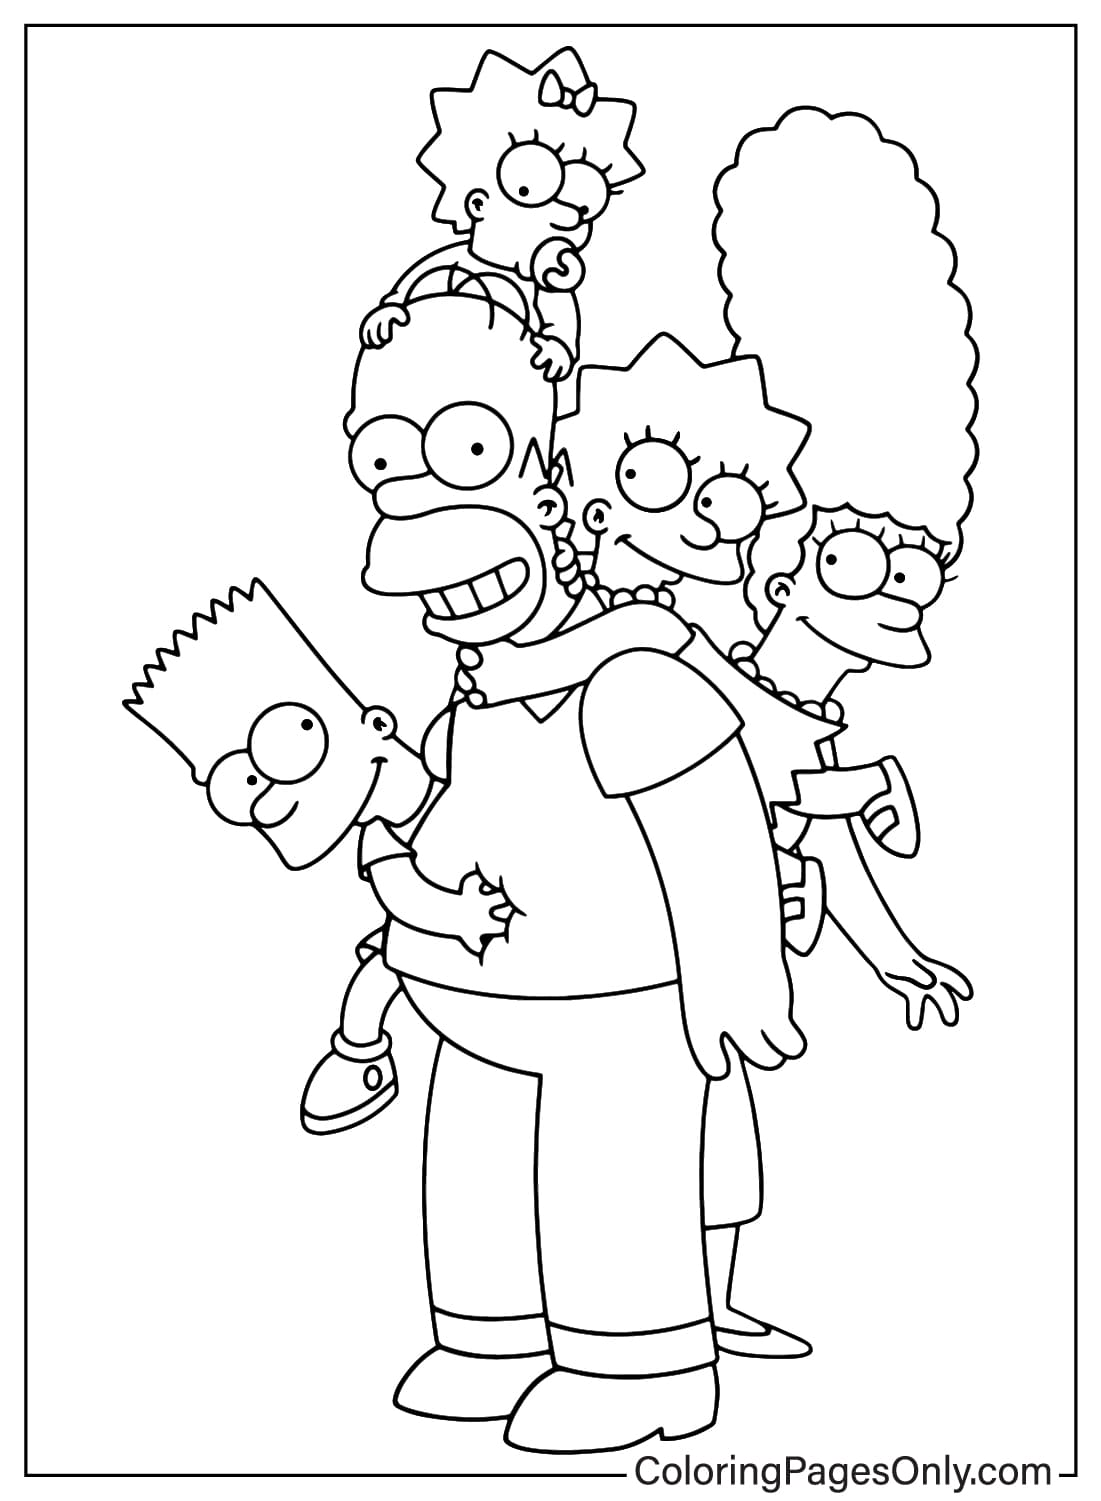 Los Simpson Página para colorear imprimir gratis de Los Simpson